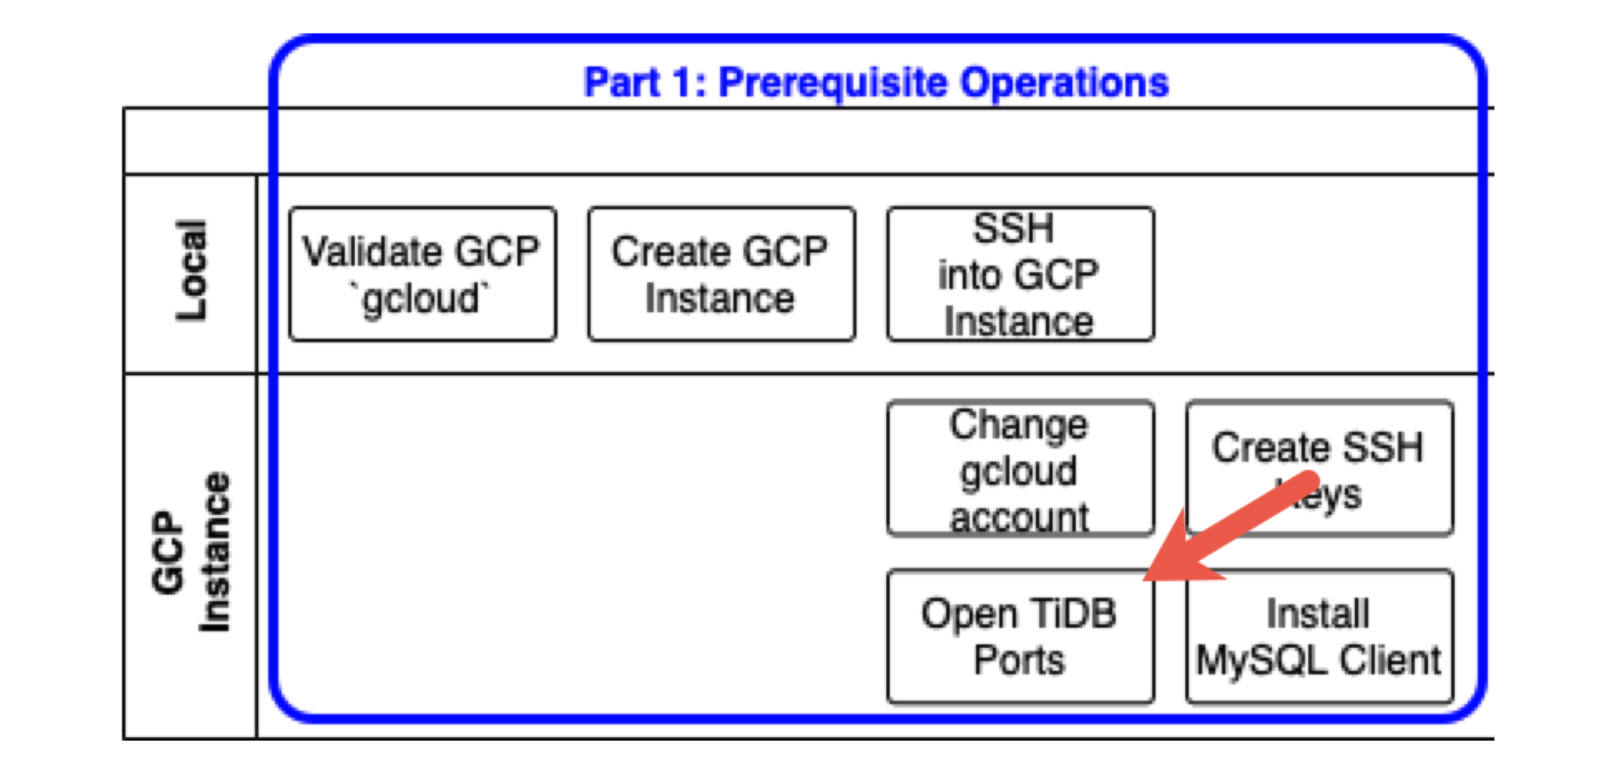 Open TiDB ports